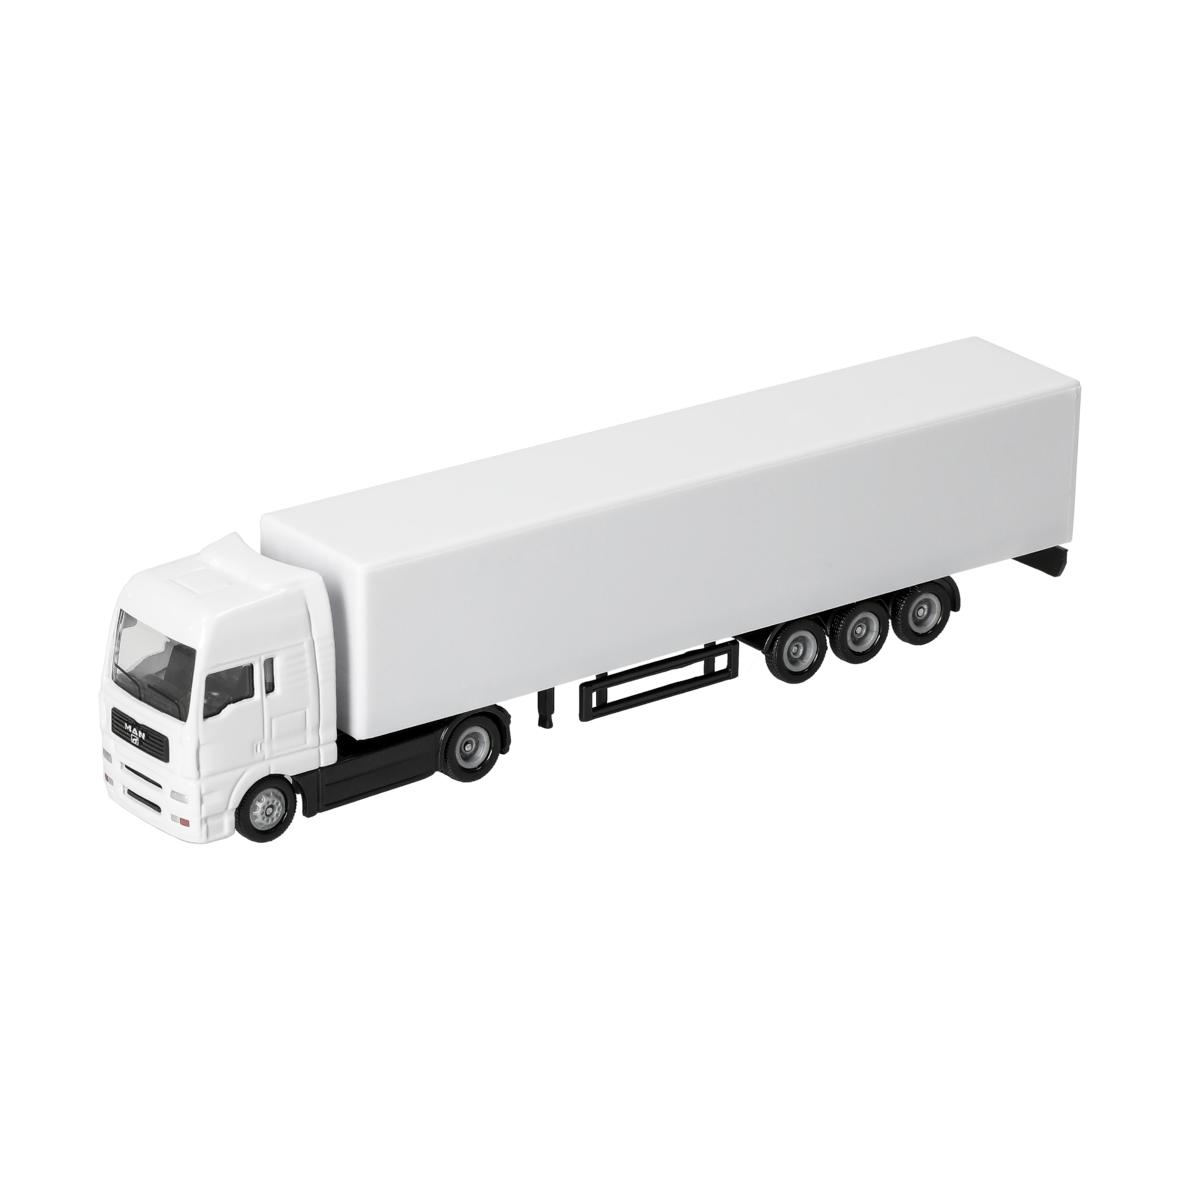 Miniaturas de camiones a escala 1:87 - Artieda